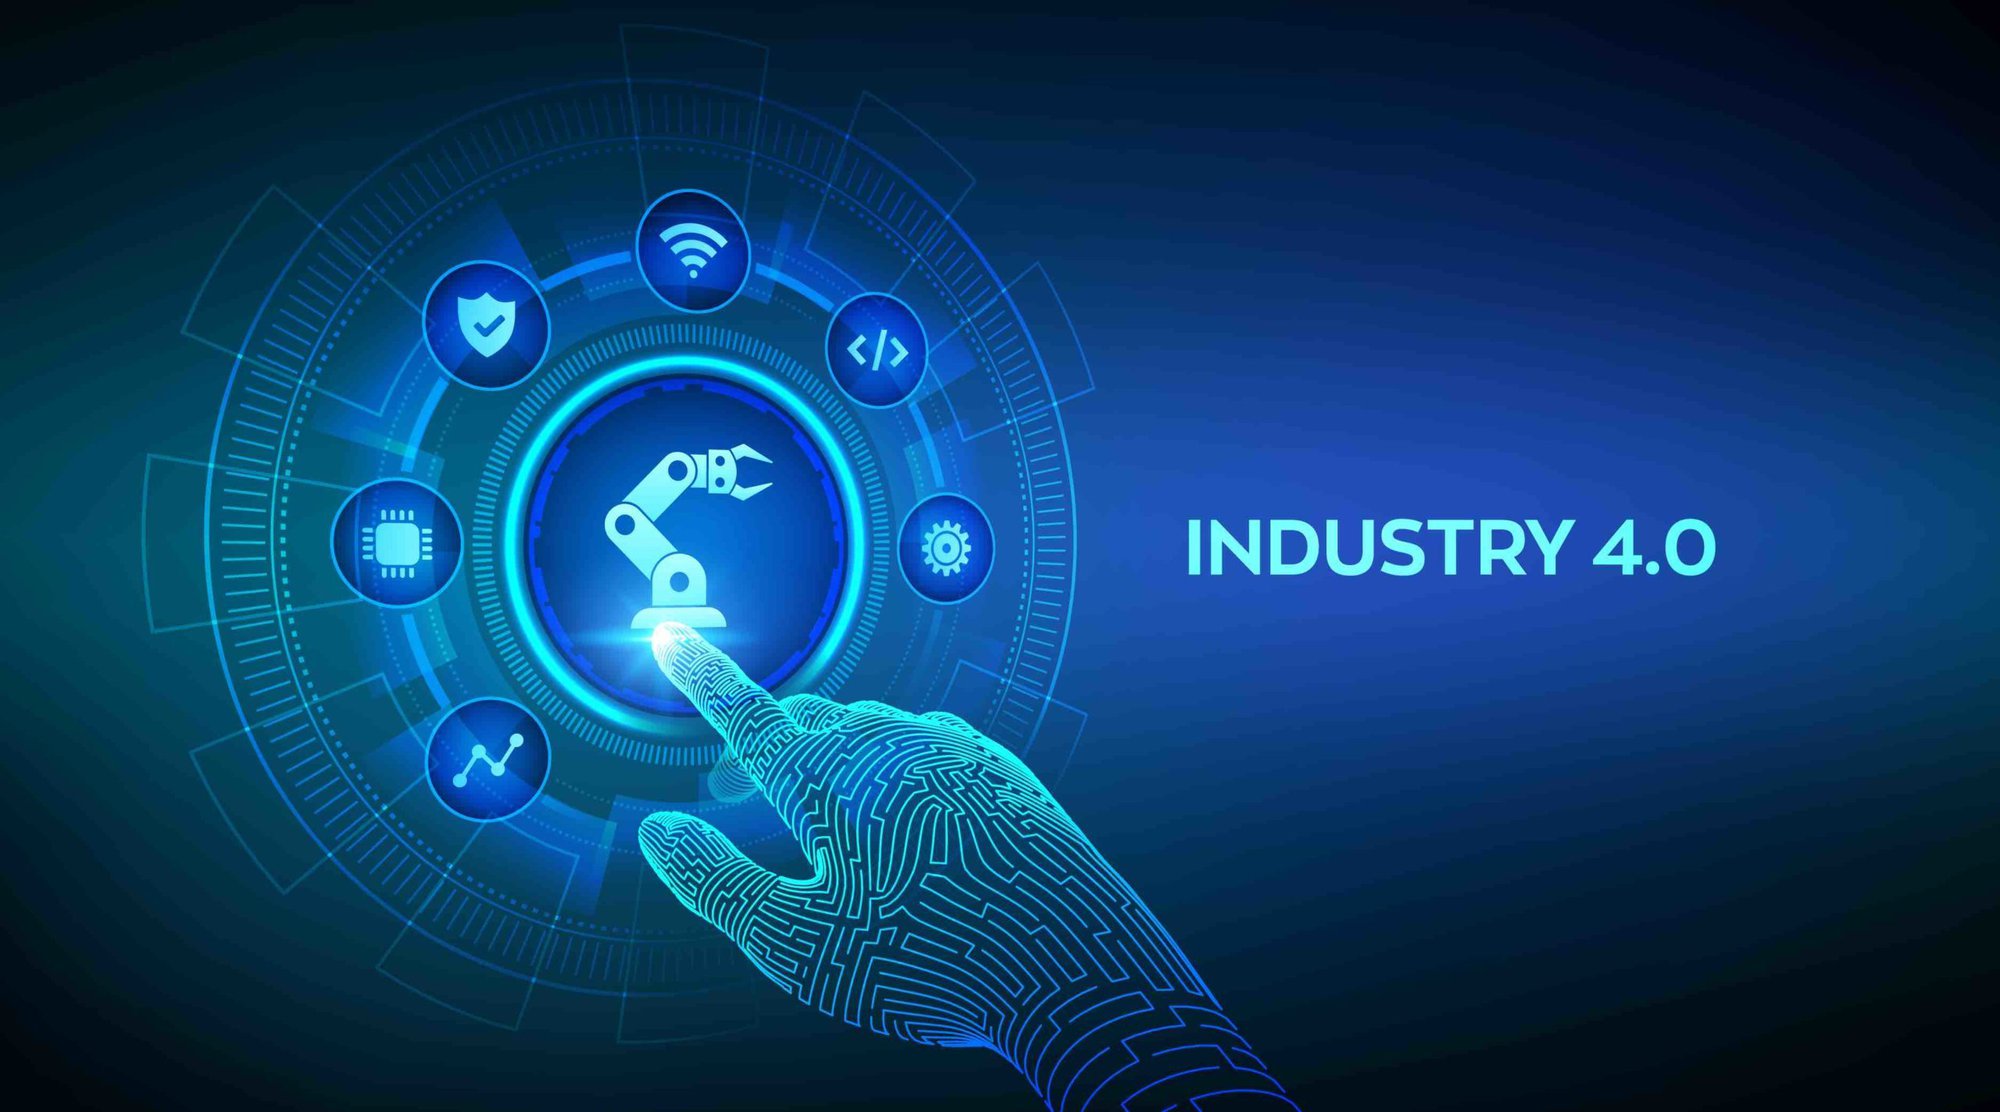 Công nghiệp 4.0: Khám phá hình ảnh về Công nghiệp 4.0 để hiểu rõ hơn về xu hướng kỹ thuật số, khoa học công nghệ đang được áp dụng trong sản xuất và đưa ra những giải pháp sáng tạo, hiệu quả, giúp nâng cao năng suất, tối ưu hóa quản lý và phục vụ nhu cầu khách hàng.